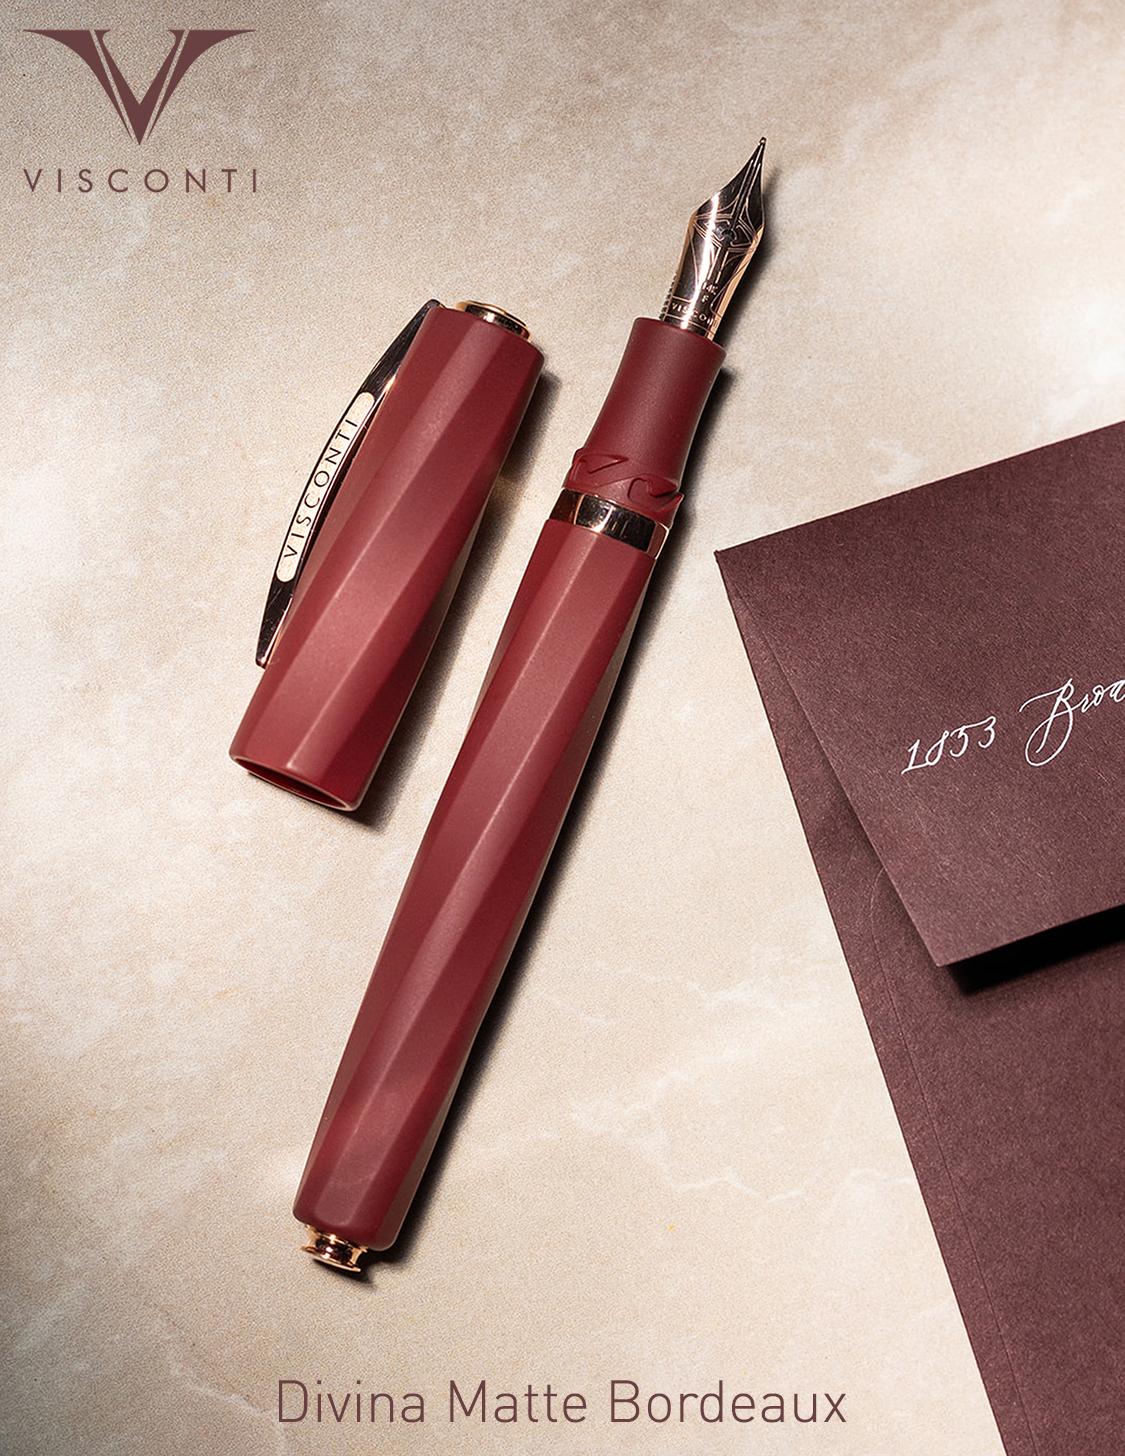 Visconti Divina Matte Bordeaux Fountain Pen